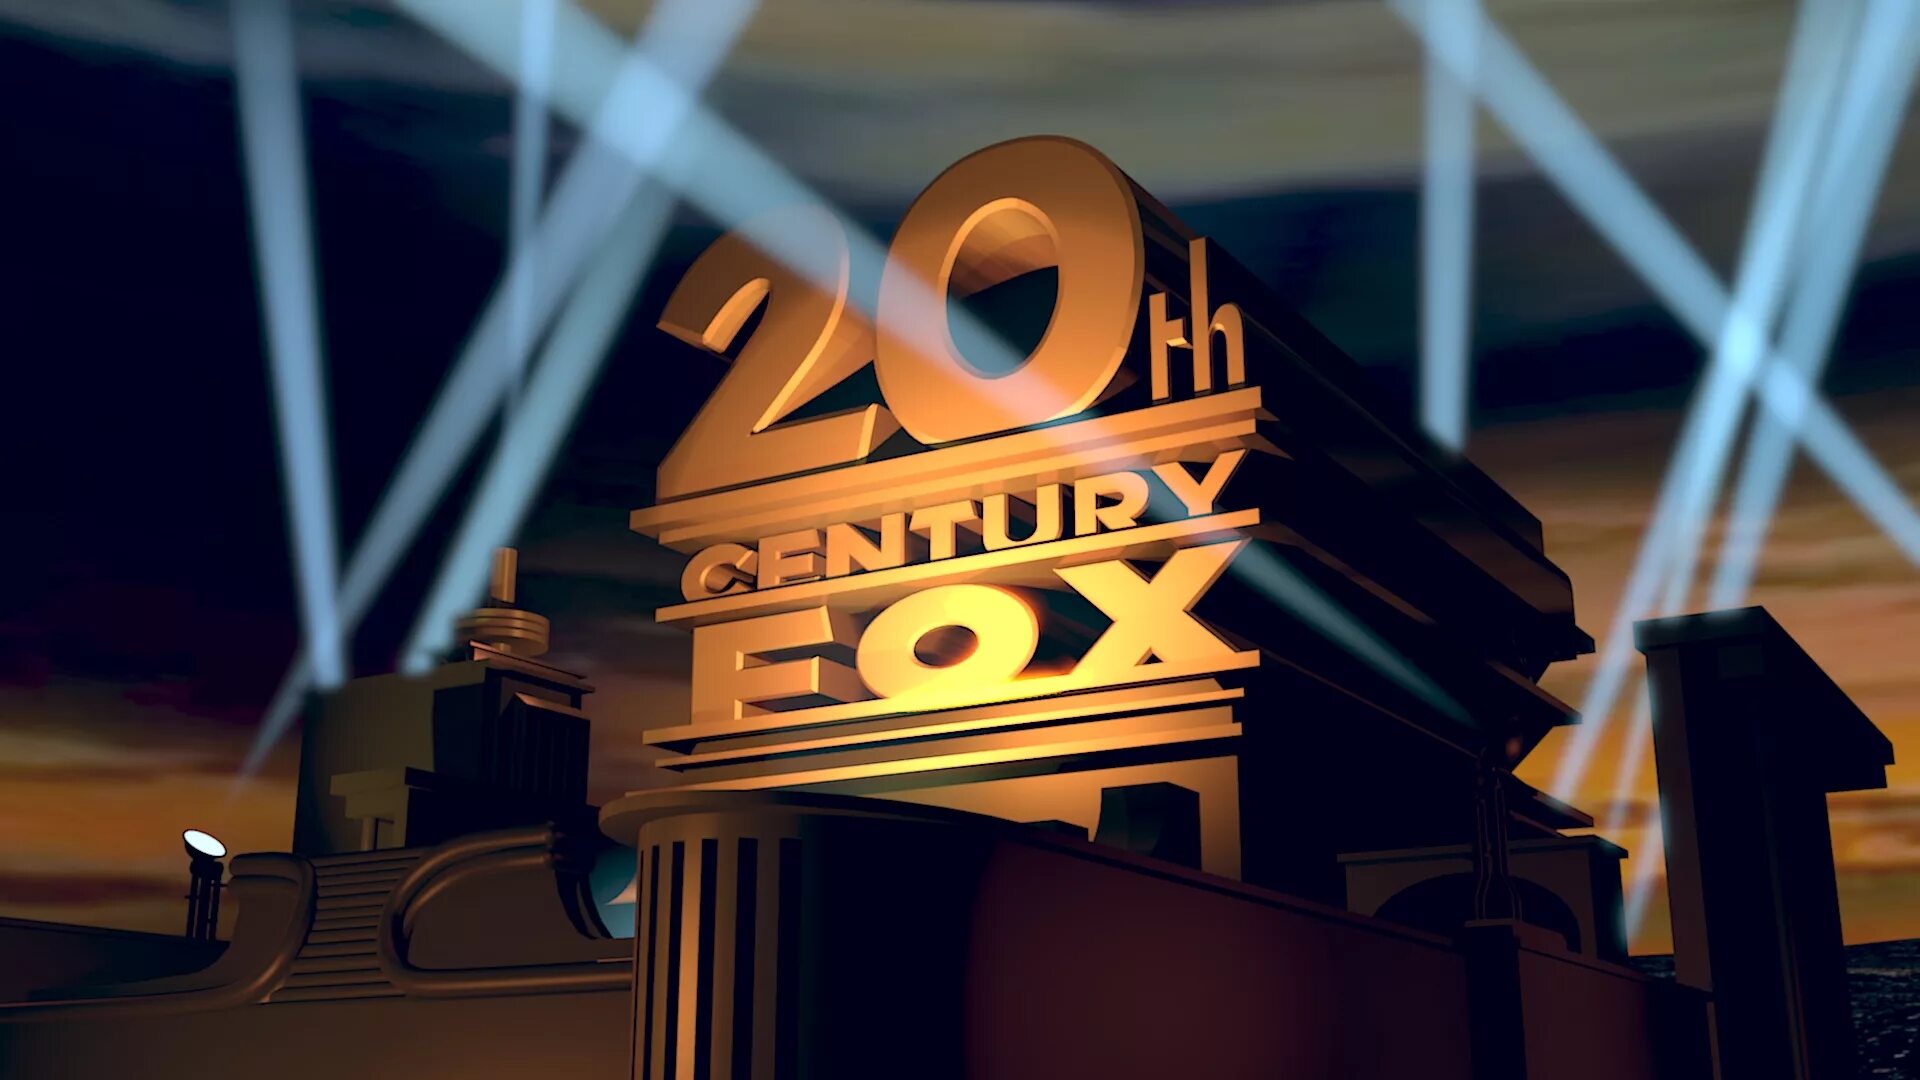 Th fox. 20 Век Центури Фокс. 20 Век Фокс Пикчерз. Кинокомпания 20 век Фокс представляет. Студия 20th Century Fox.